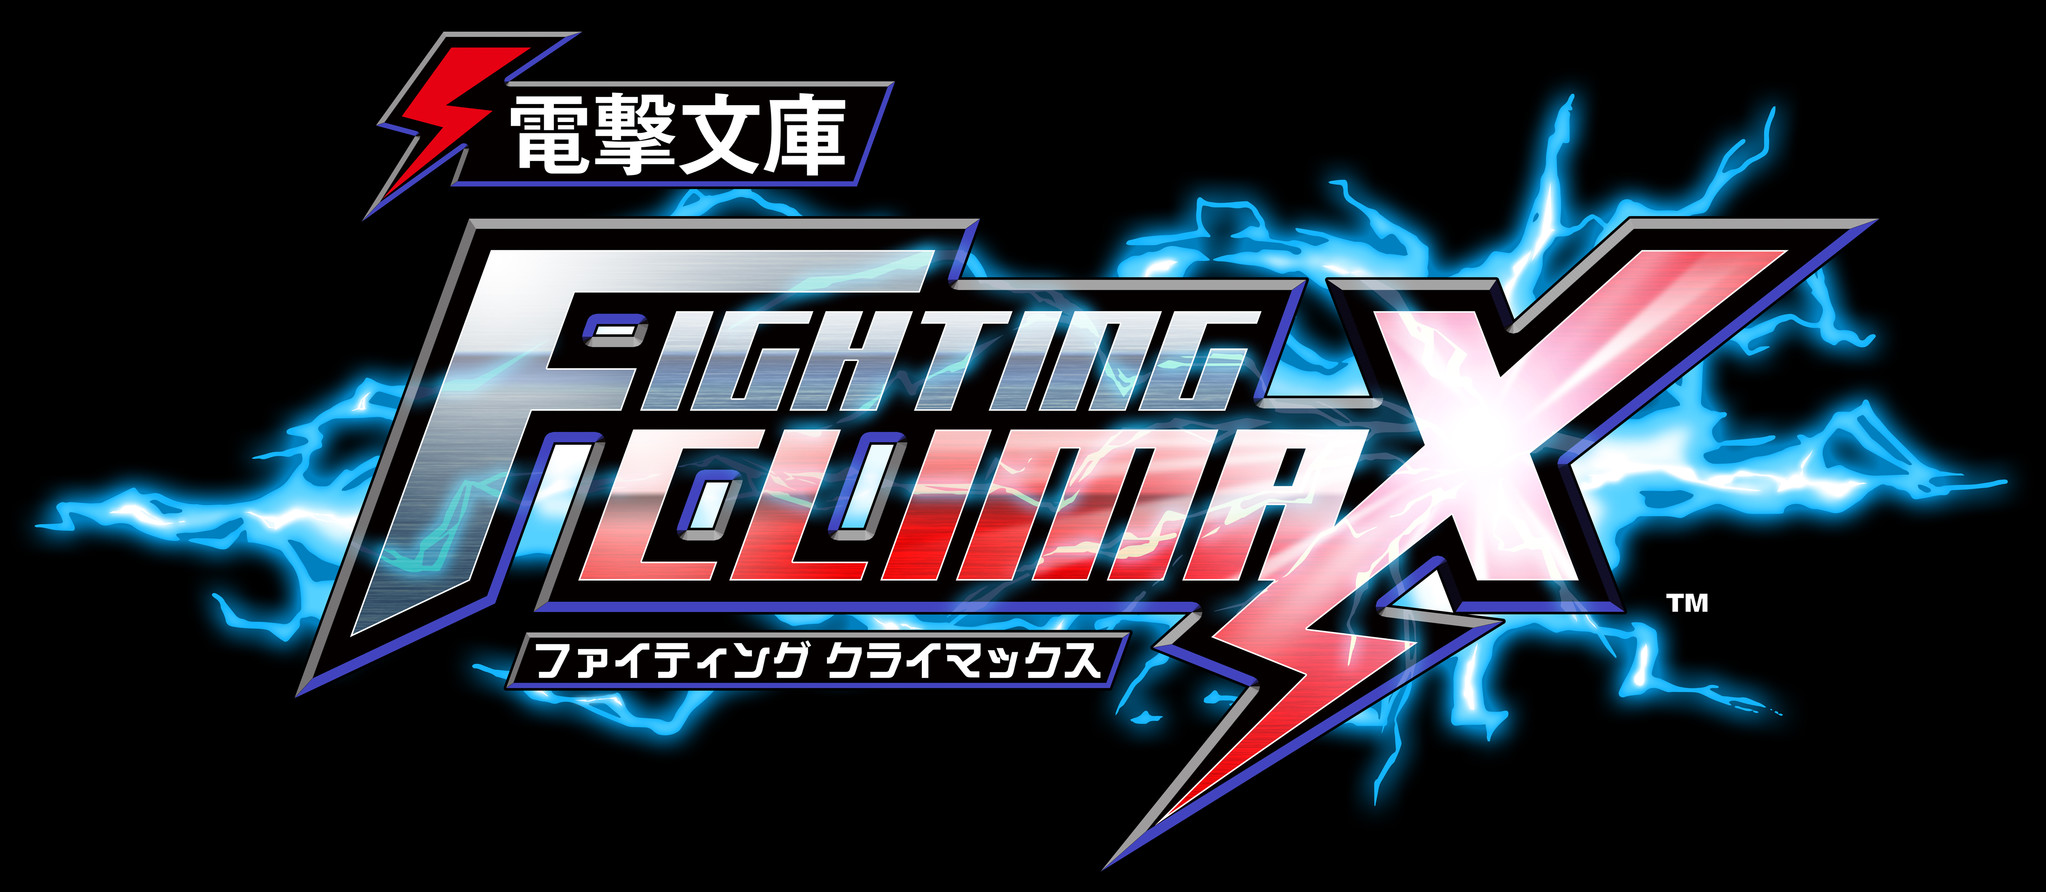 電撃文庫 Vs Sega プロジェクトの対戦格闘ゲーム 電撃文庫 Fighting Climax 誕生 株式会社kadokawaのプレスリリース